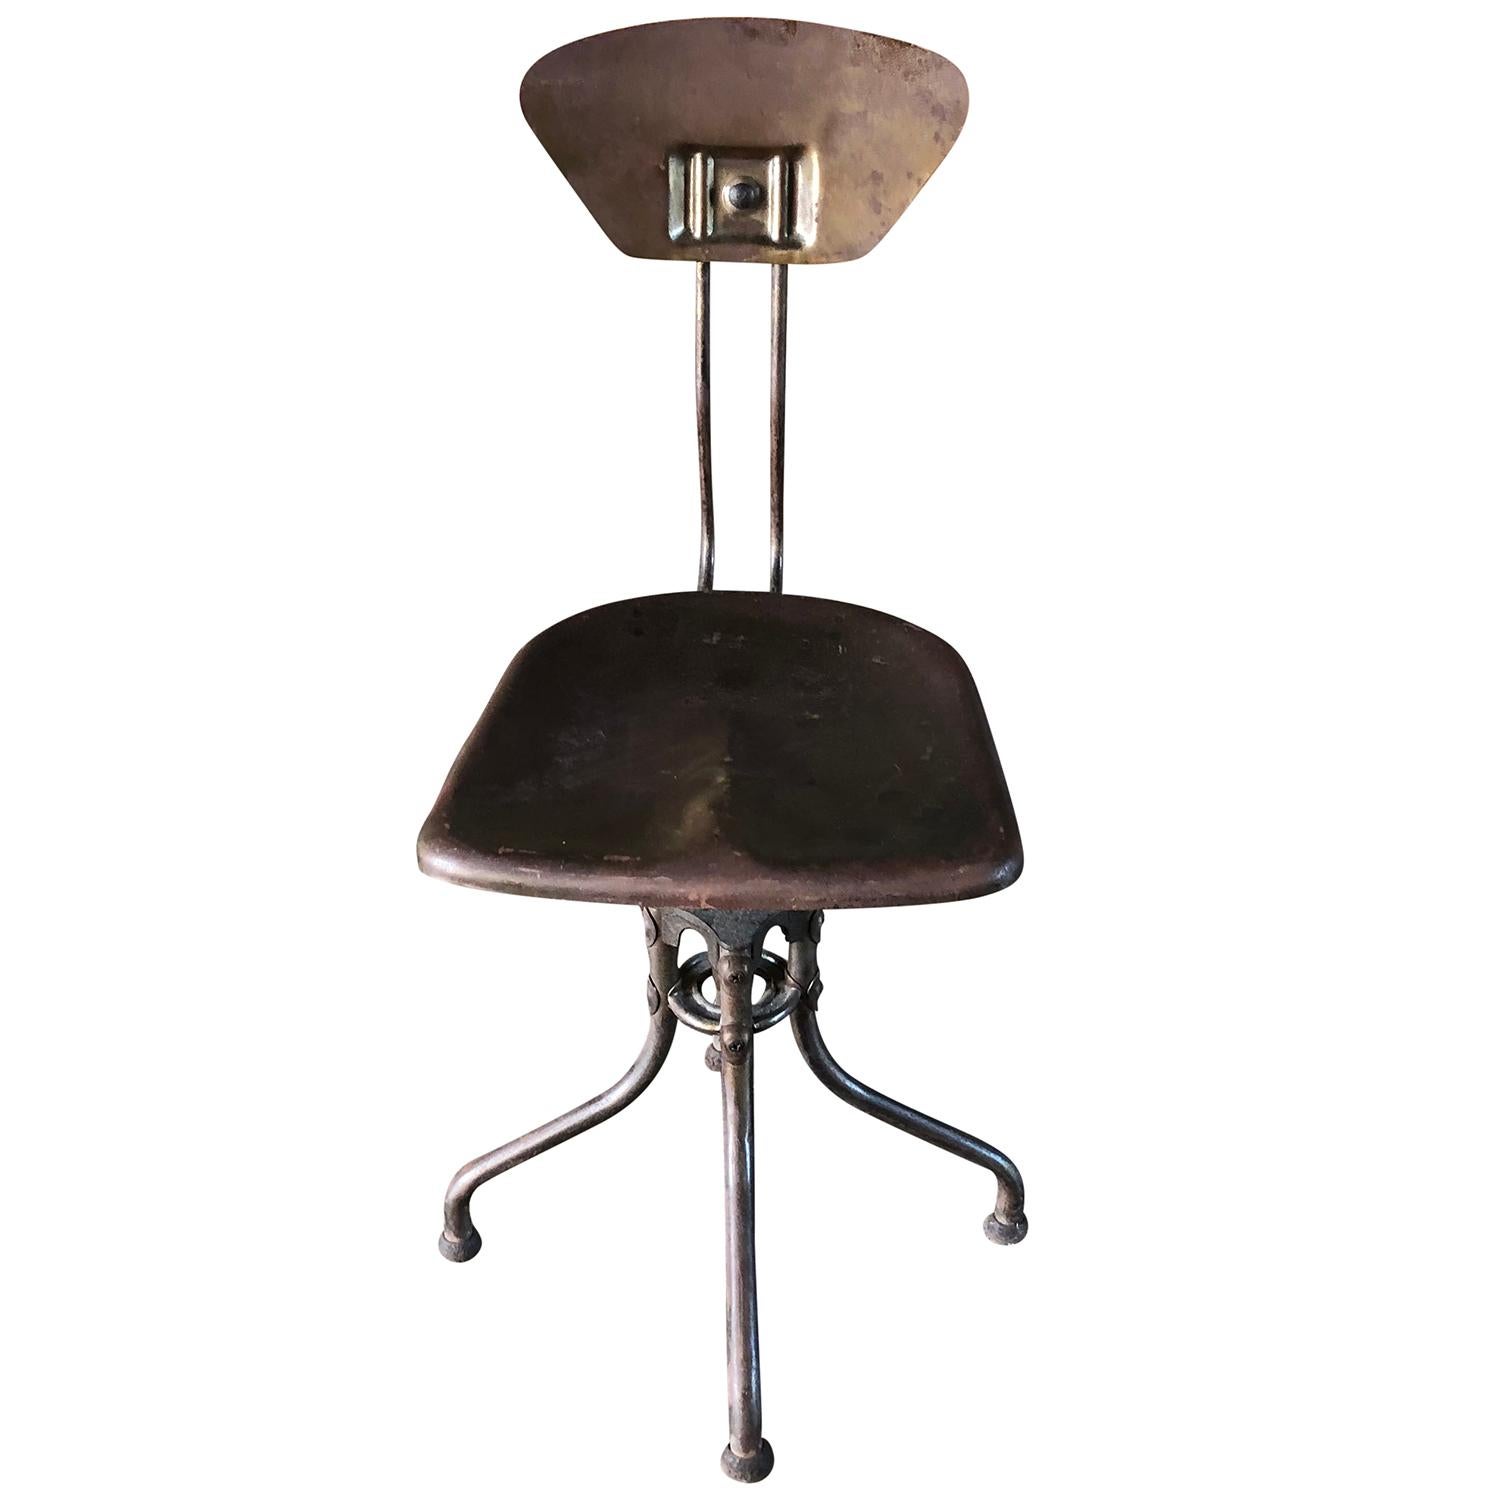 Une chaise d'atelier industrielle française vintage en métal, la hauteur du siège est réglable. Design/One, produit par Flambo, en bon état. Usures dues à l'âge et à l'utilisation, vers 1920-1930, Paris, France.

Henri Lieber est un designer